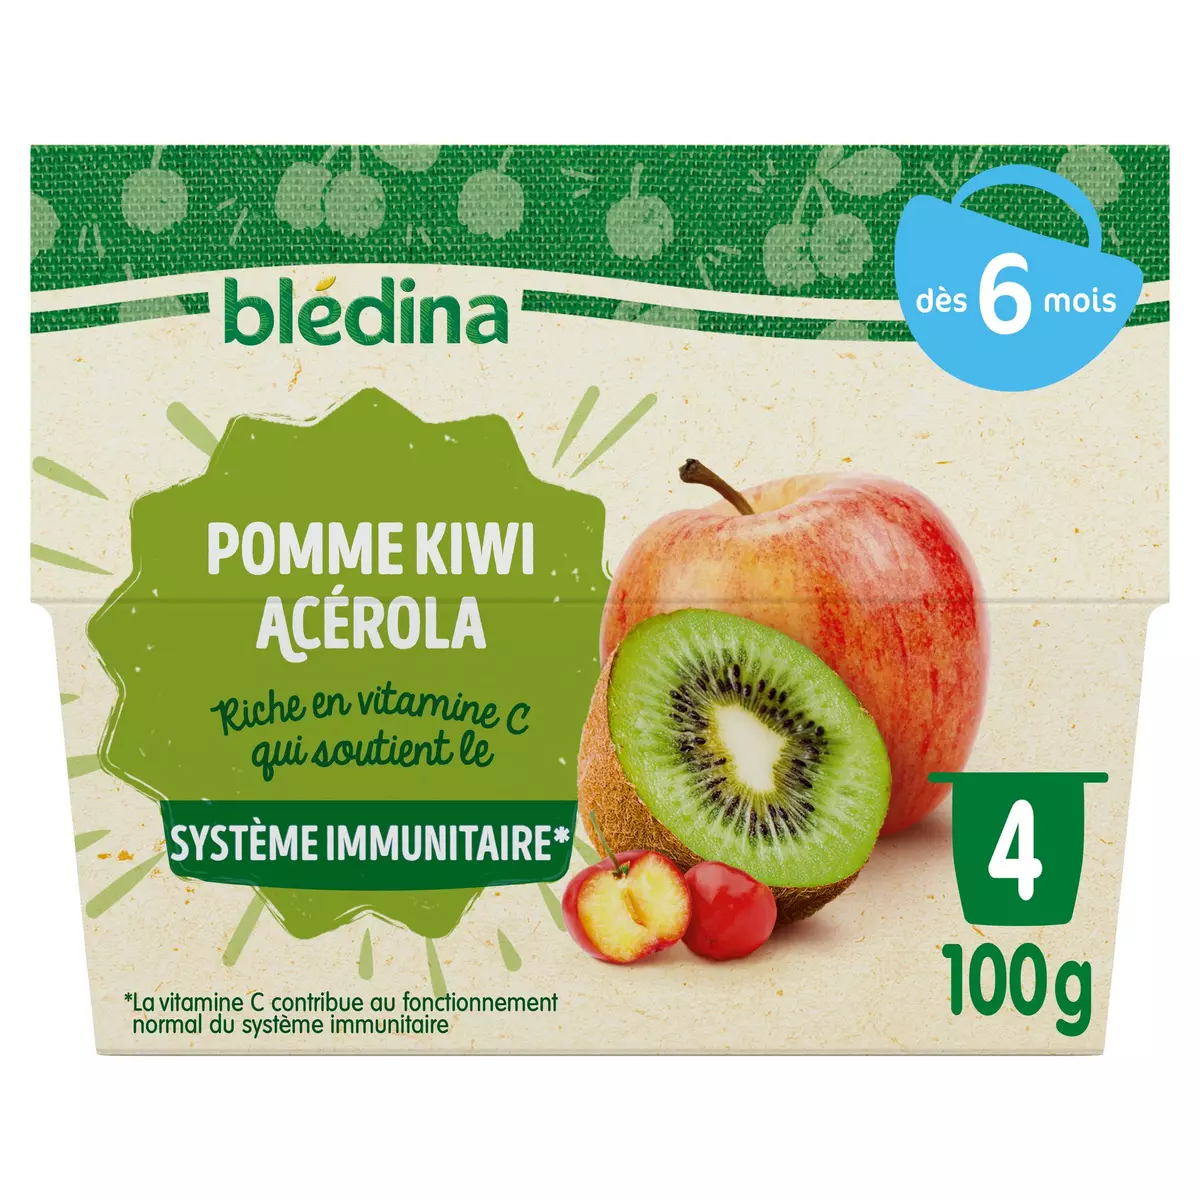 BLEDINA Petit pot dessert pomme kiwi acérola dès 6 mois 4x100g